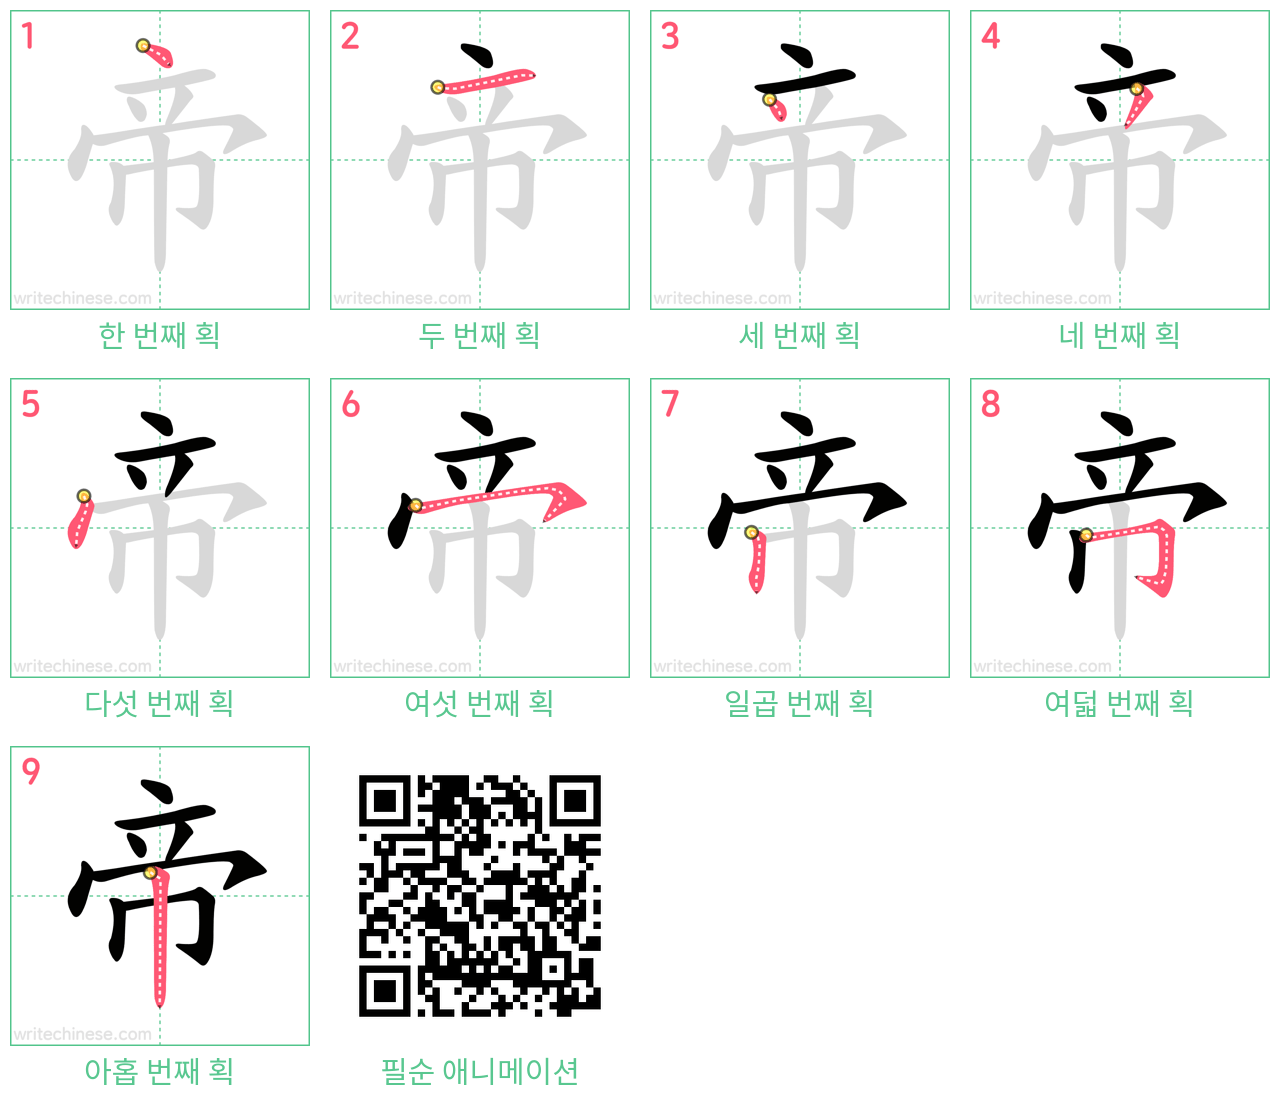 帝 step-by-step stroke order diagrams